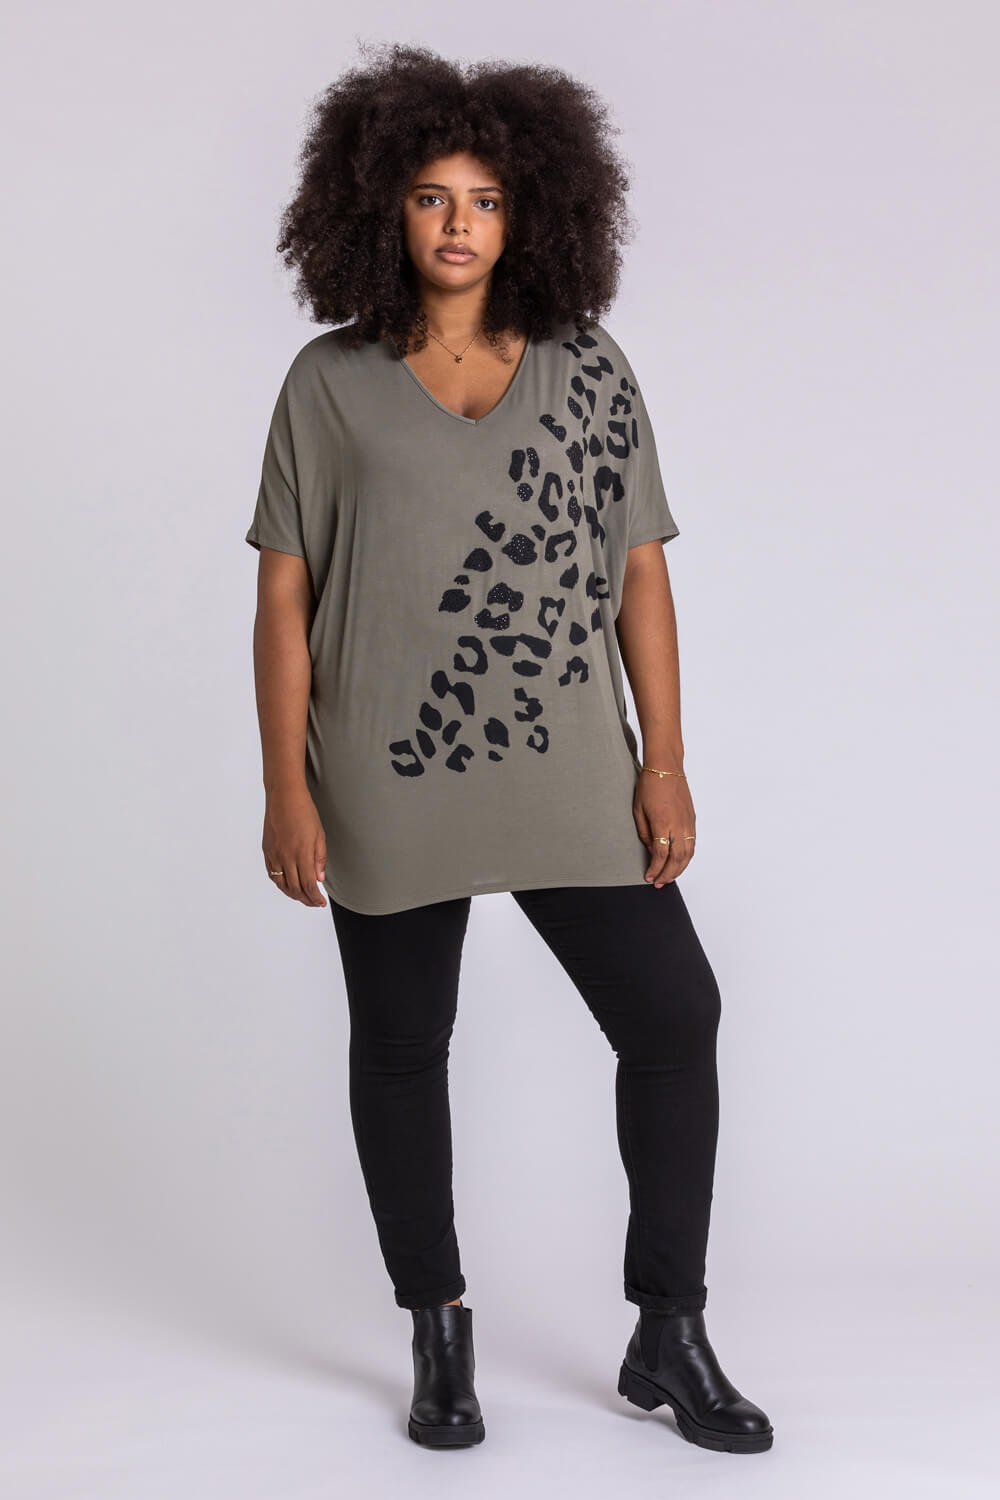 KHAKI Curve Embellished Animal Print T-Shirt, Image 3 of 4